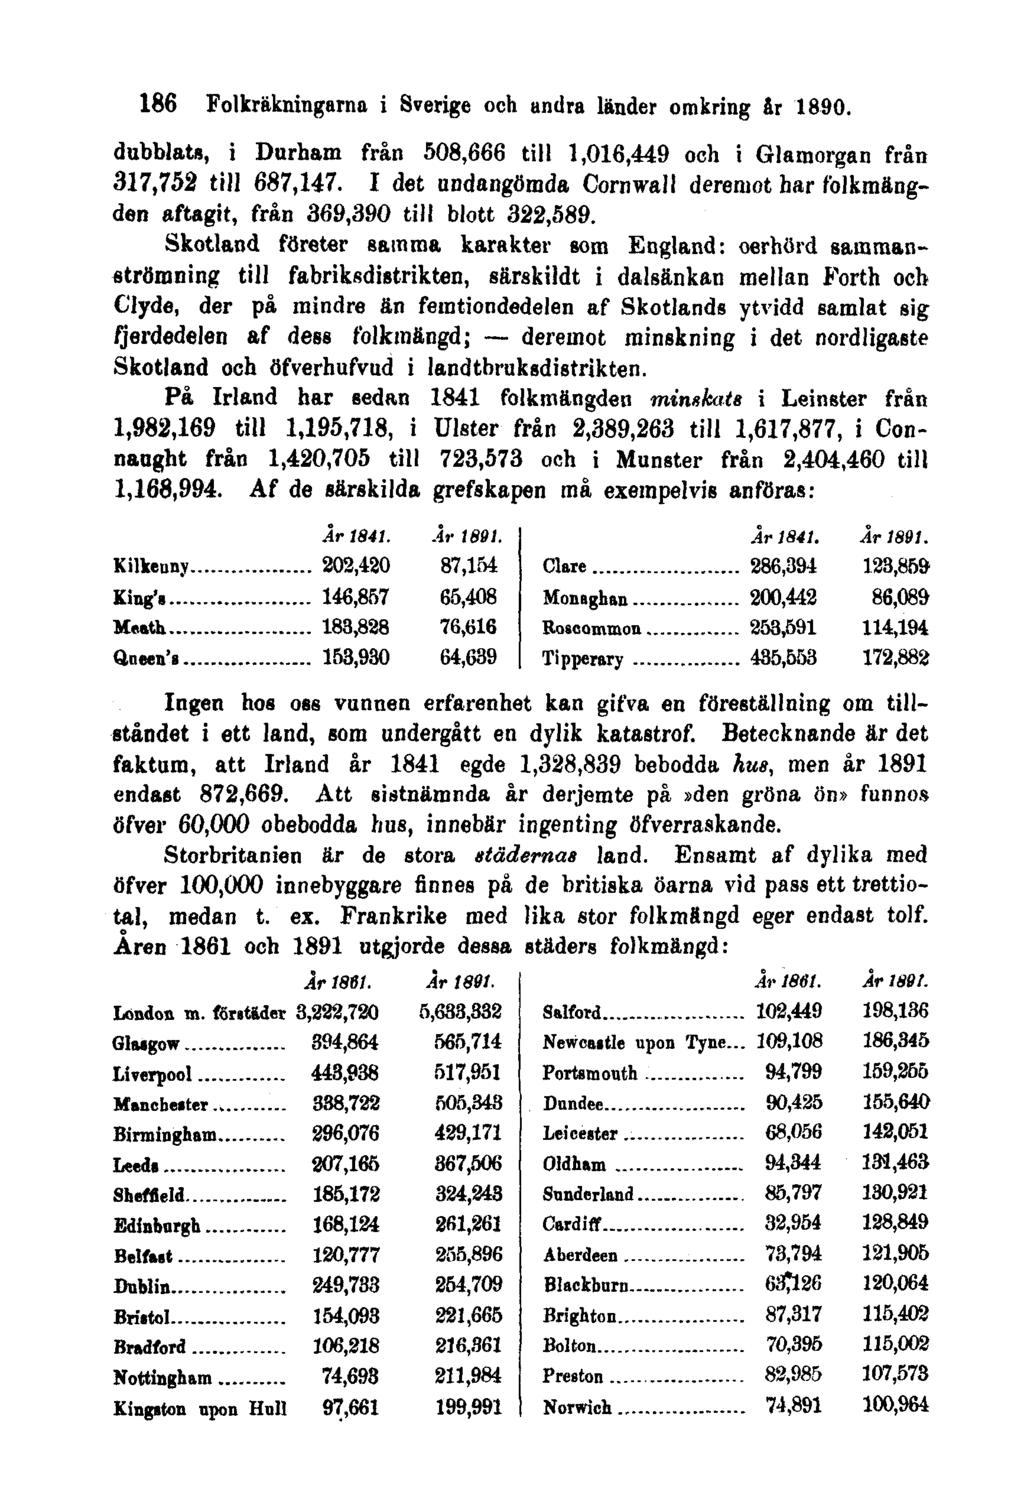 186 Folkräkningarna i Sverige och andra länder omkring år 1890. dubblats, i Durham från 508,666 till 1,016,449 och i Glamorgan från 317,752 till 687,147.